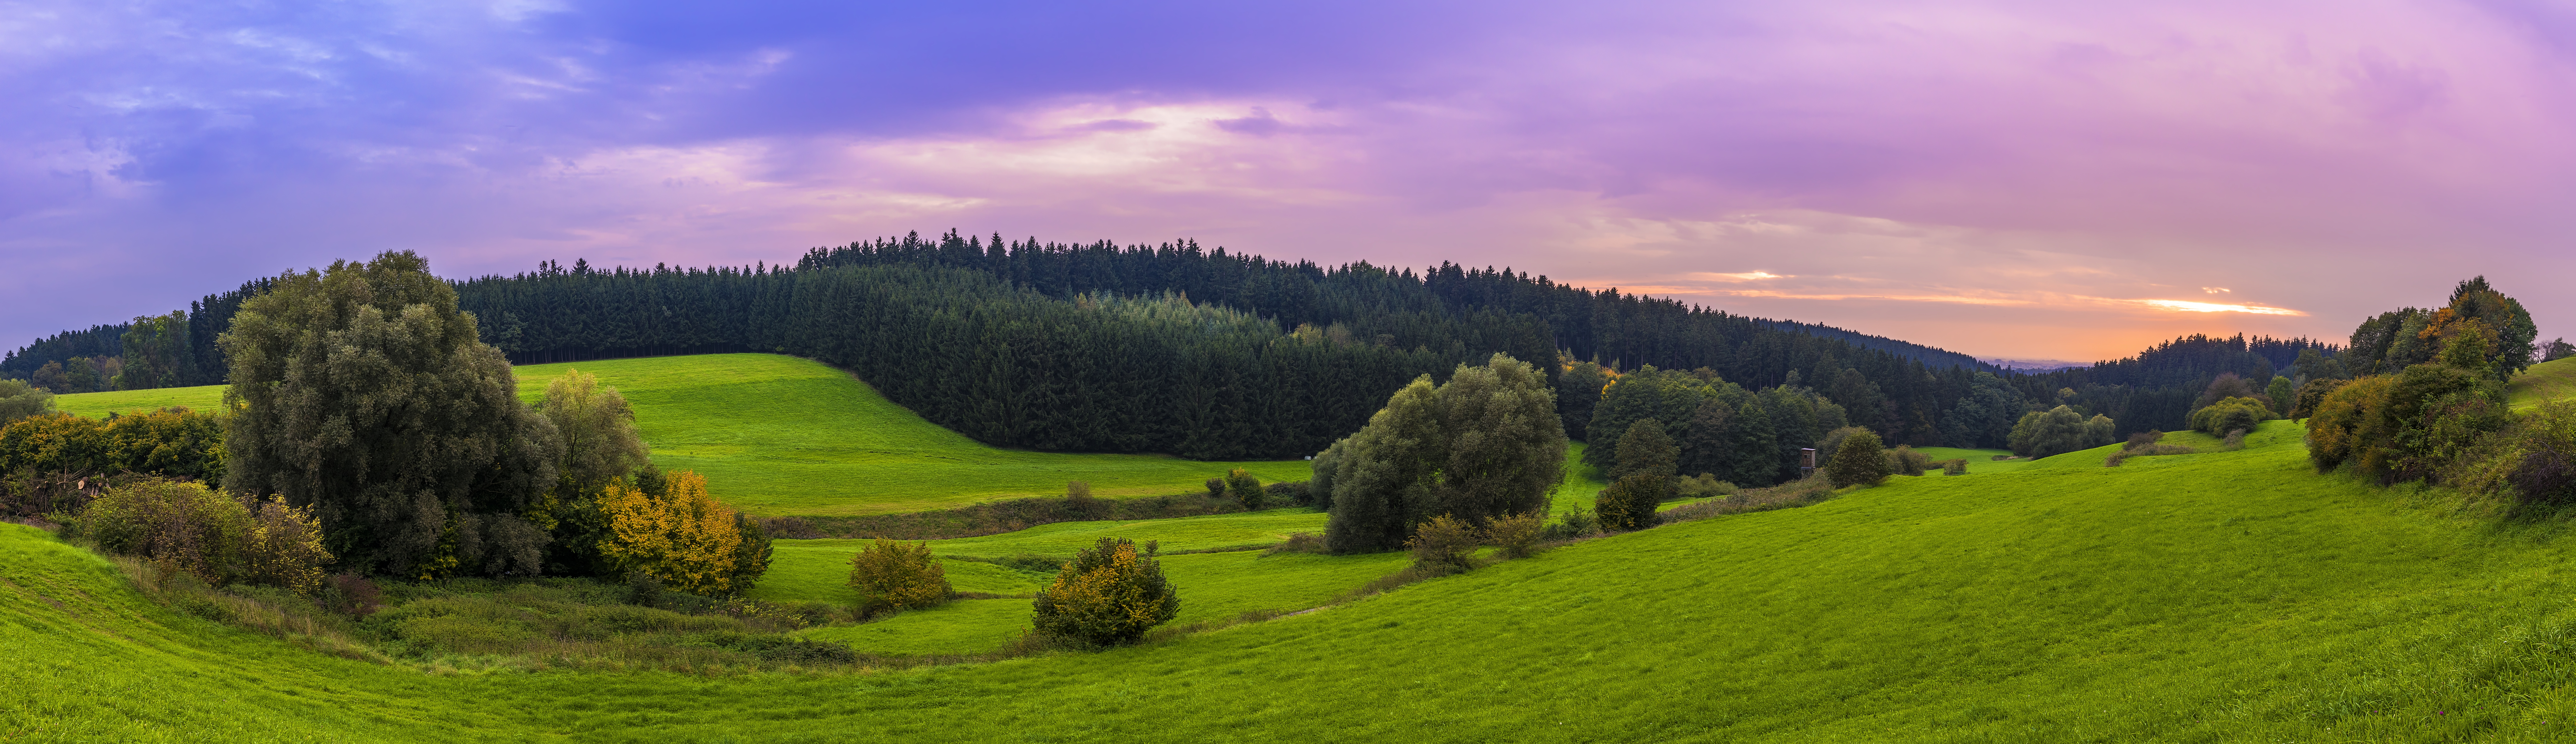 Бесплатное фото Большие равнины с зеленой травой